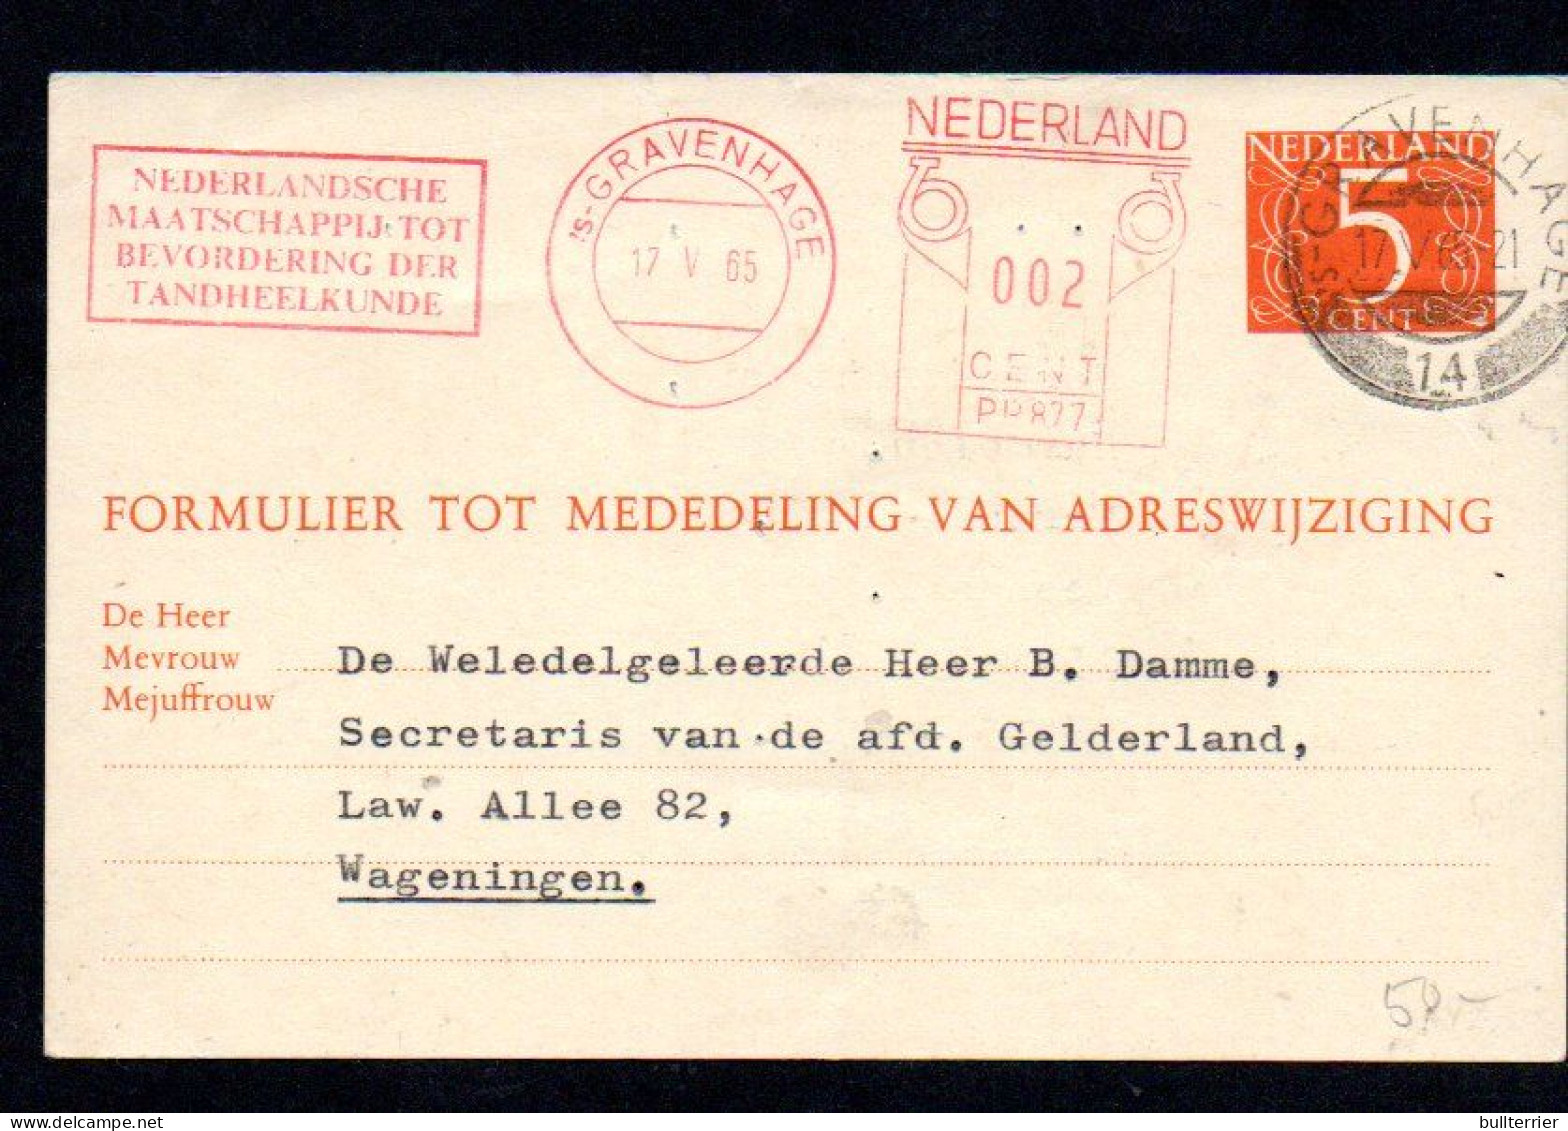 DENISTRY -  NETHERLANDS - 1965- DENTAL COVER WAGENINGE WITH SLOGAN POSTMARK - Medicine